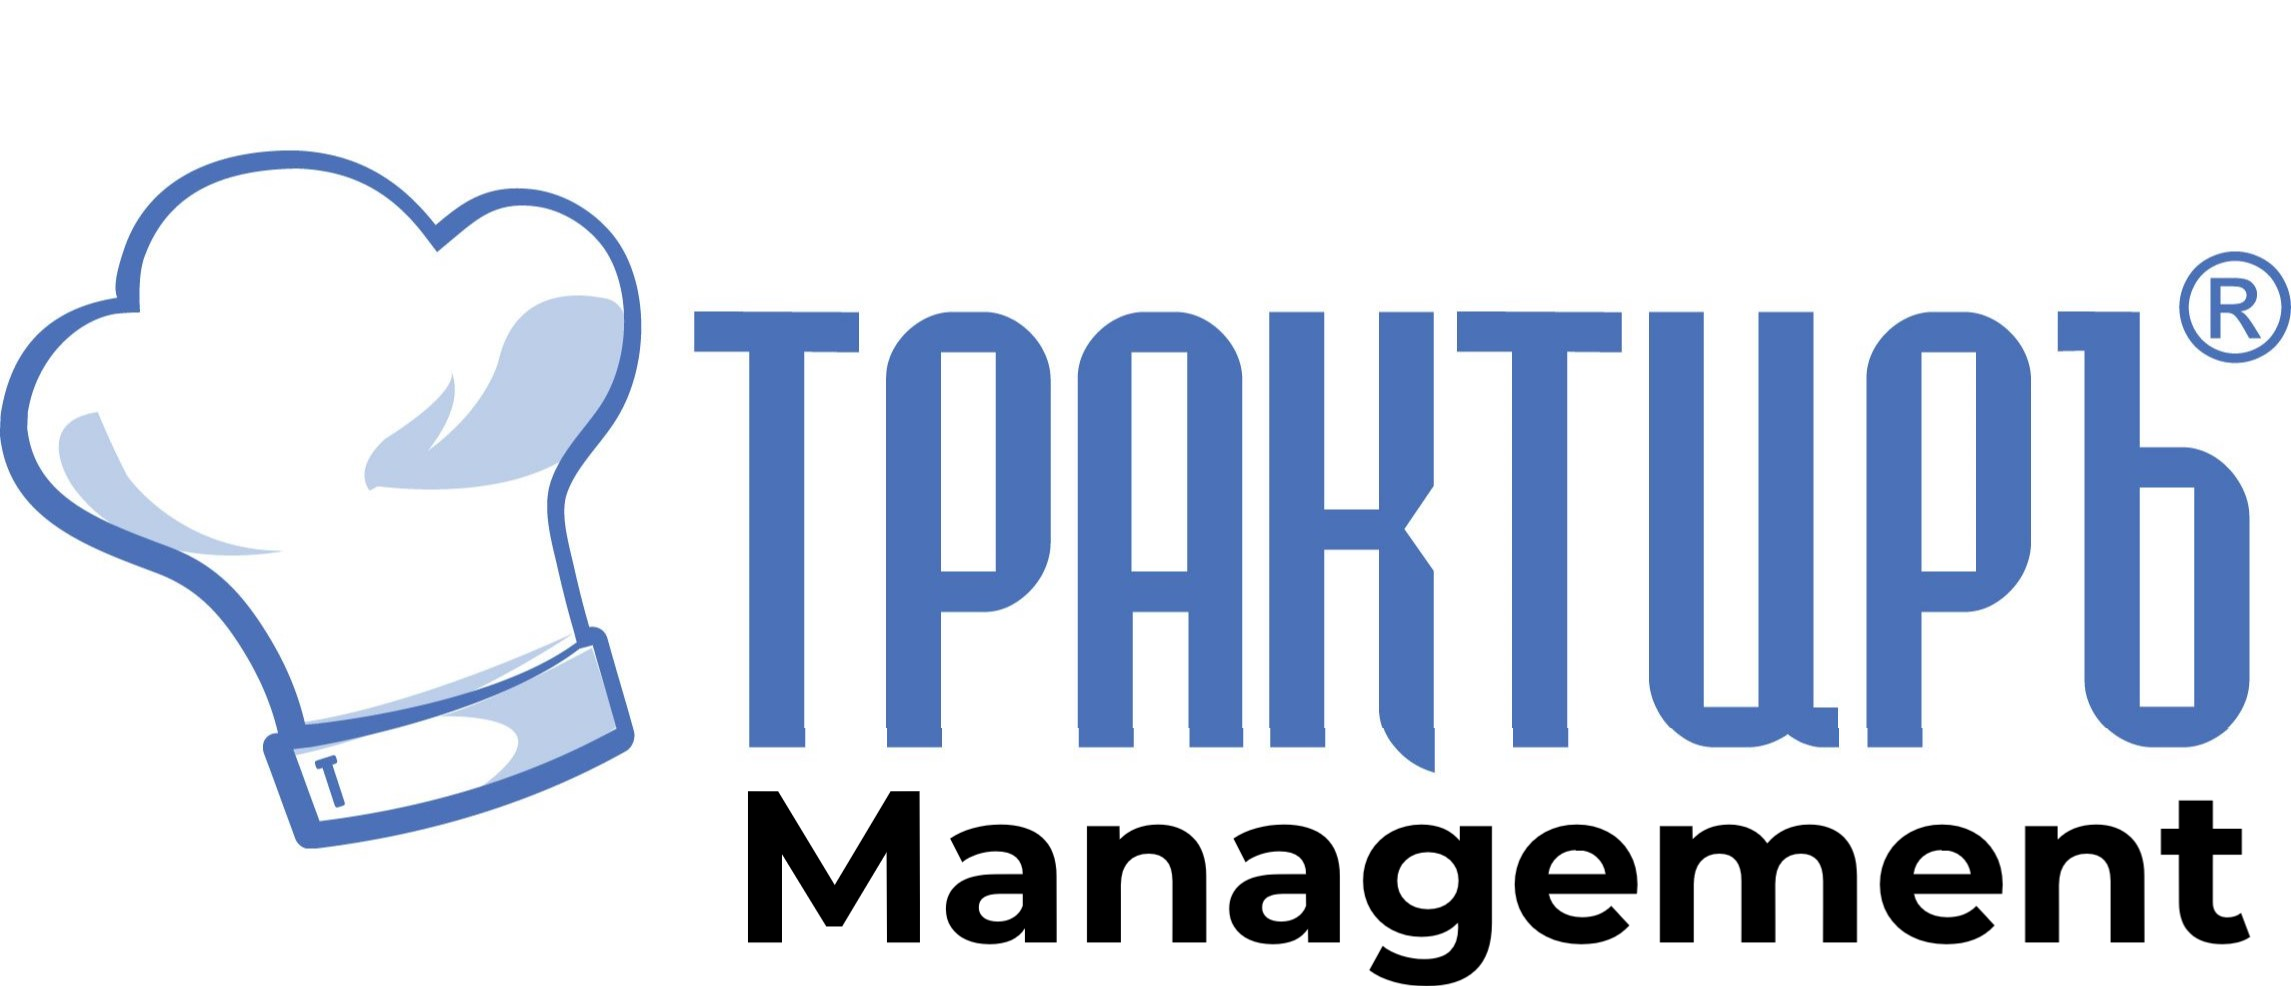 Трактиръ: Management в Саратове